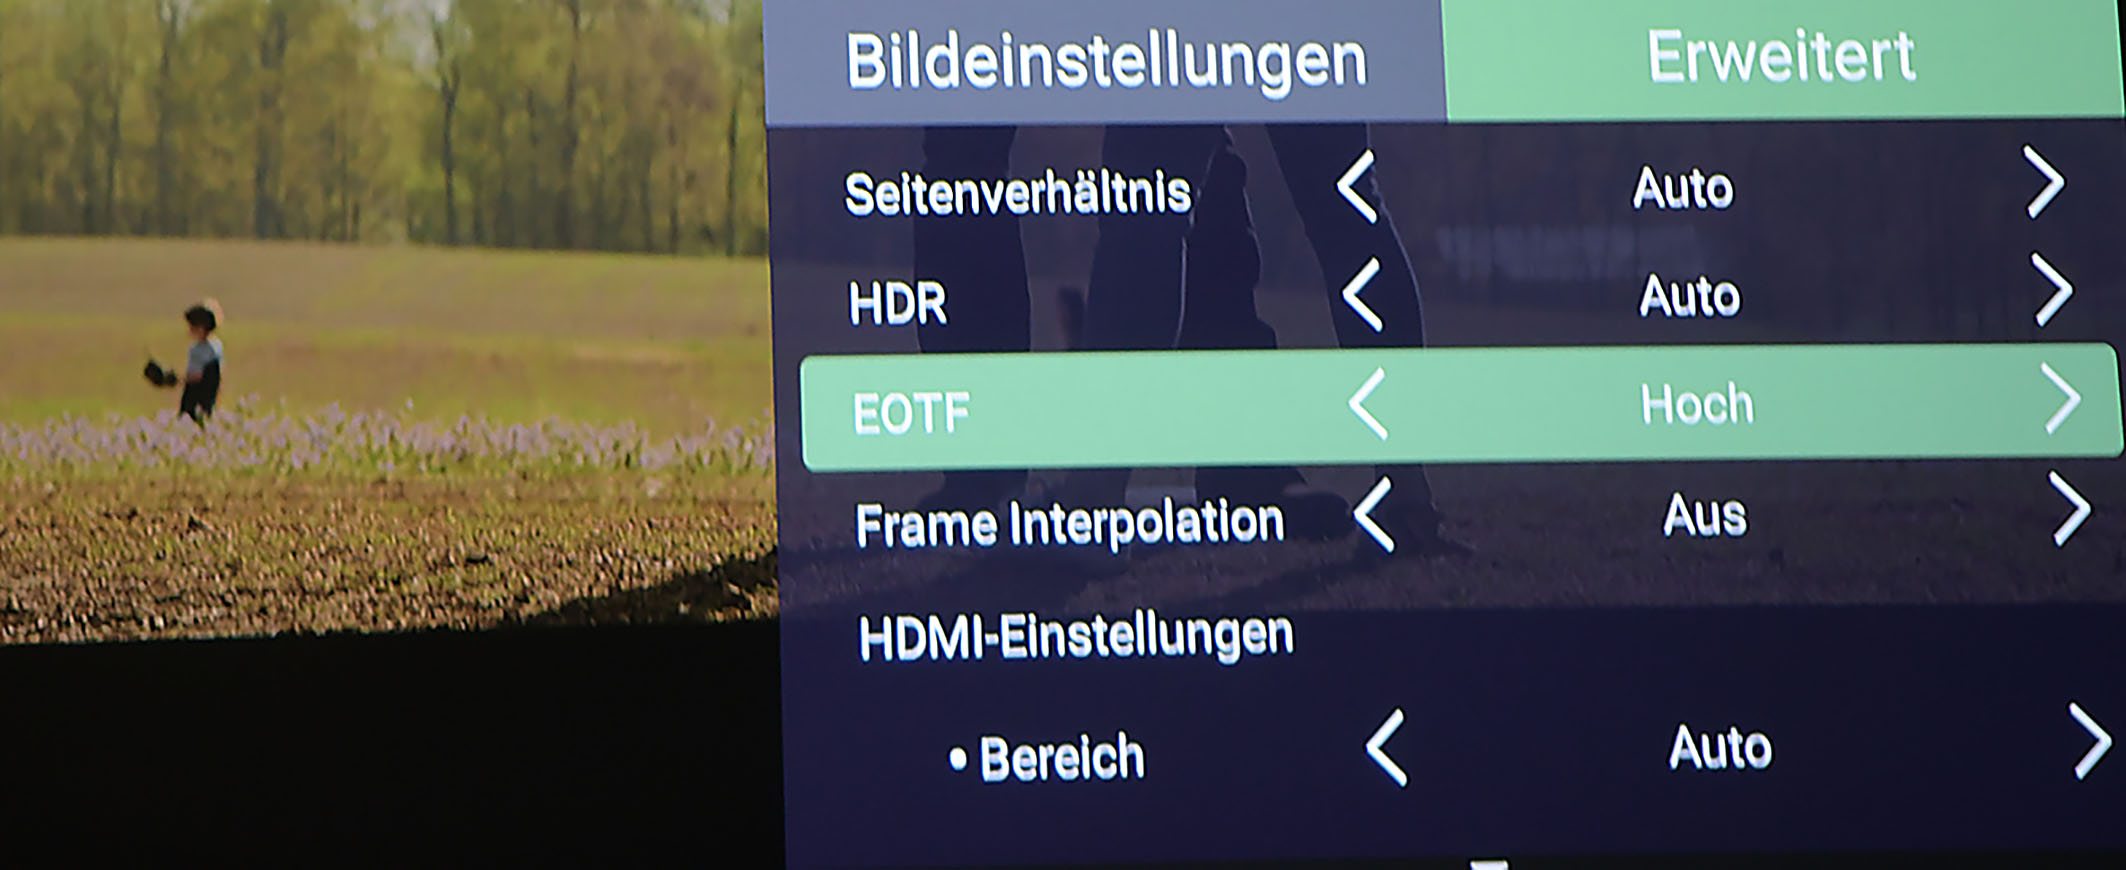 Mit EOTF lässt sich das Tone Mapping fein tunen. Auf „Hoch“ schöpft der Projektor seine Maximalhelligkeit aus und trotzdem bleiben alle im Bildsignal enthaltenen Inhalte vorhanden. Damit sehen HDR-Filme auf Leinwandbreiten um 3 Meter sehr ansprechend aus.